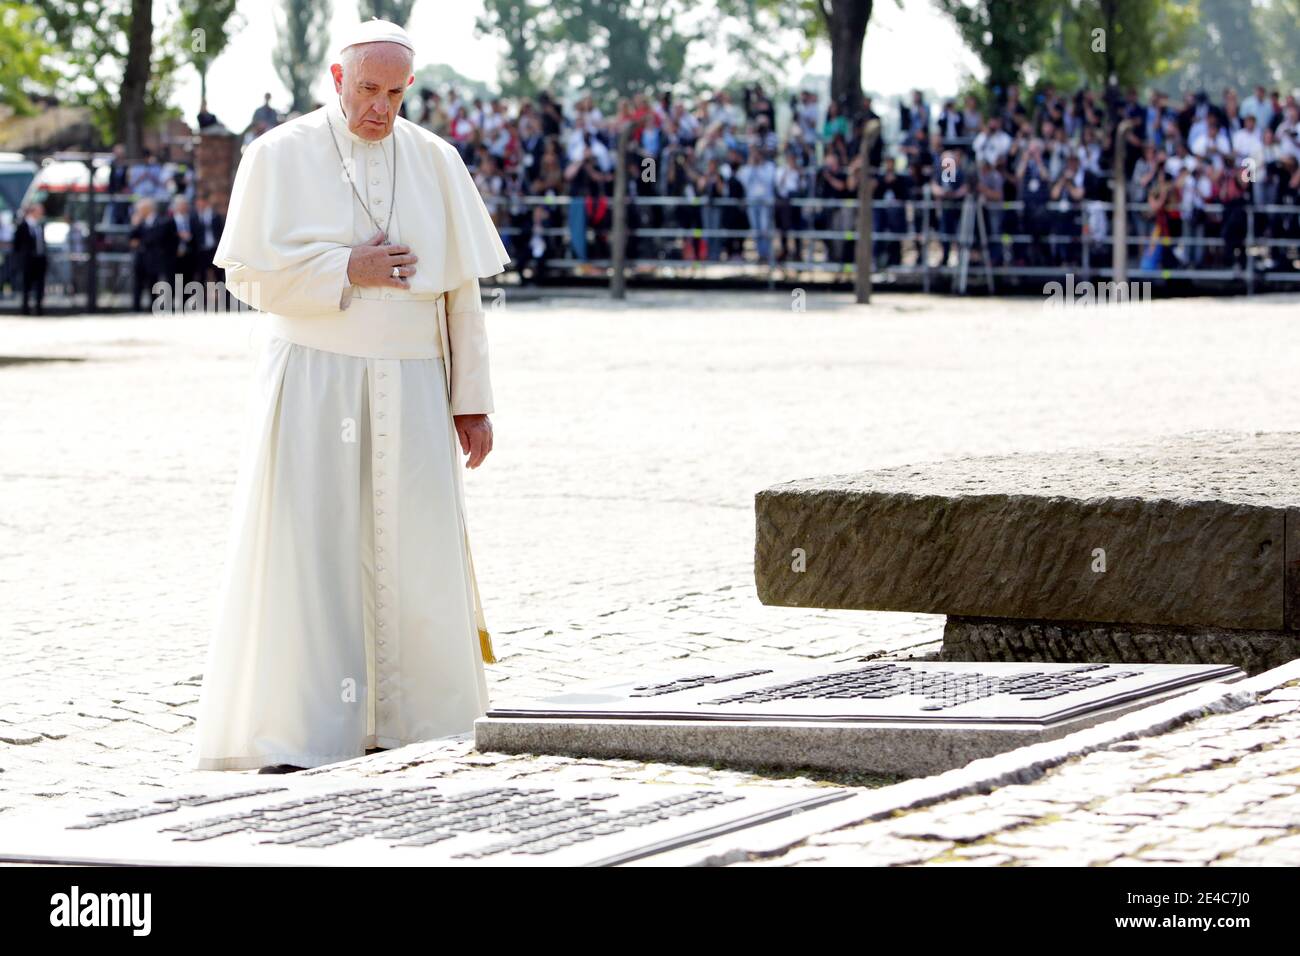 OSWIECIM, POLOGNE - 29 JUILLET 2016 : visite du Saint-Père, le Pape François, sur le site de l'ancien camp de concentration nazi Auschwitz-Birkenau. Banque D'Images